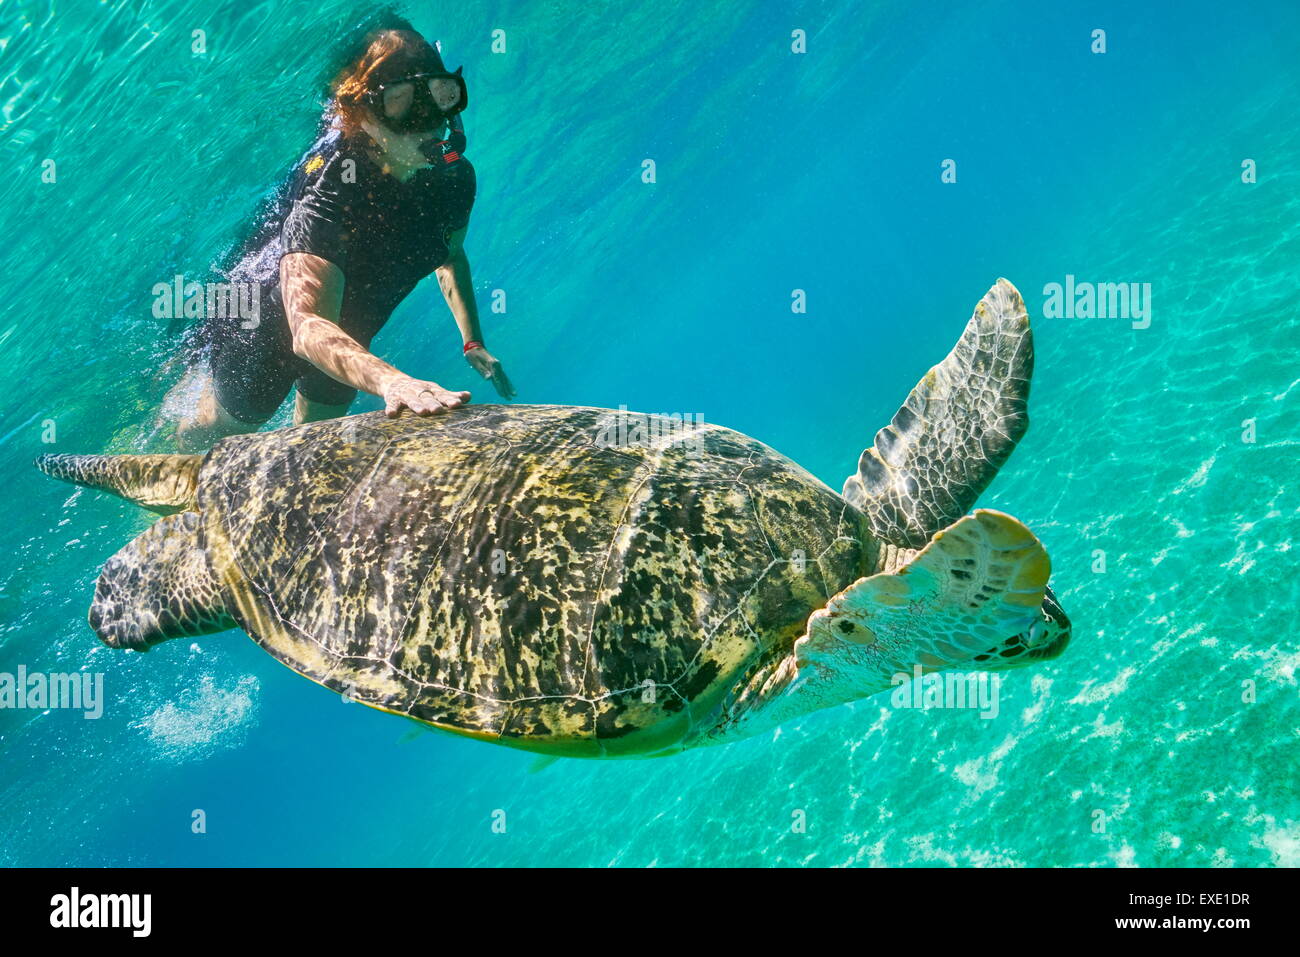 Vue sous-marine à tortue de mer verte et une jeune femme, Marsa Alam, la baie d'Abu Dabbab, Red Sea, Egypt Banque D'Images